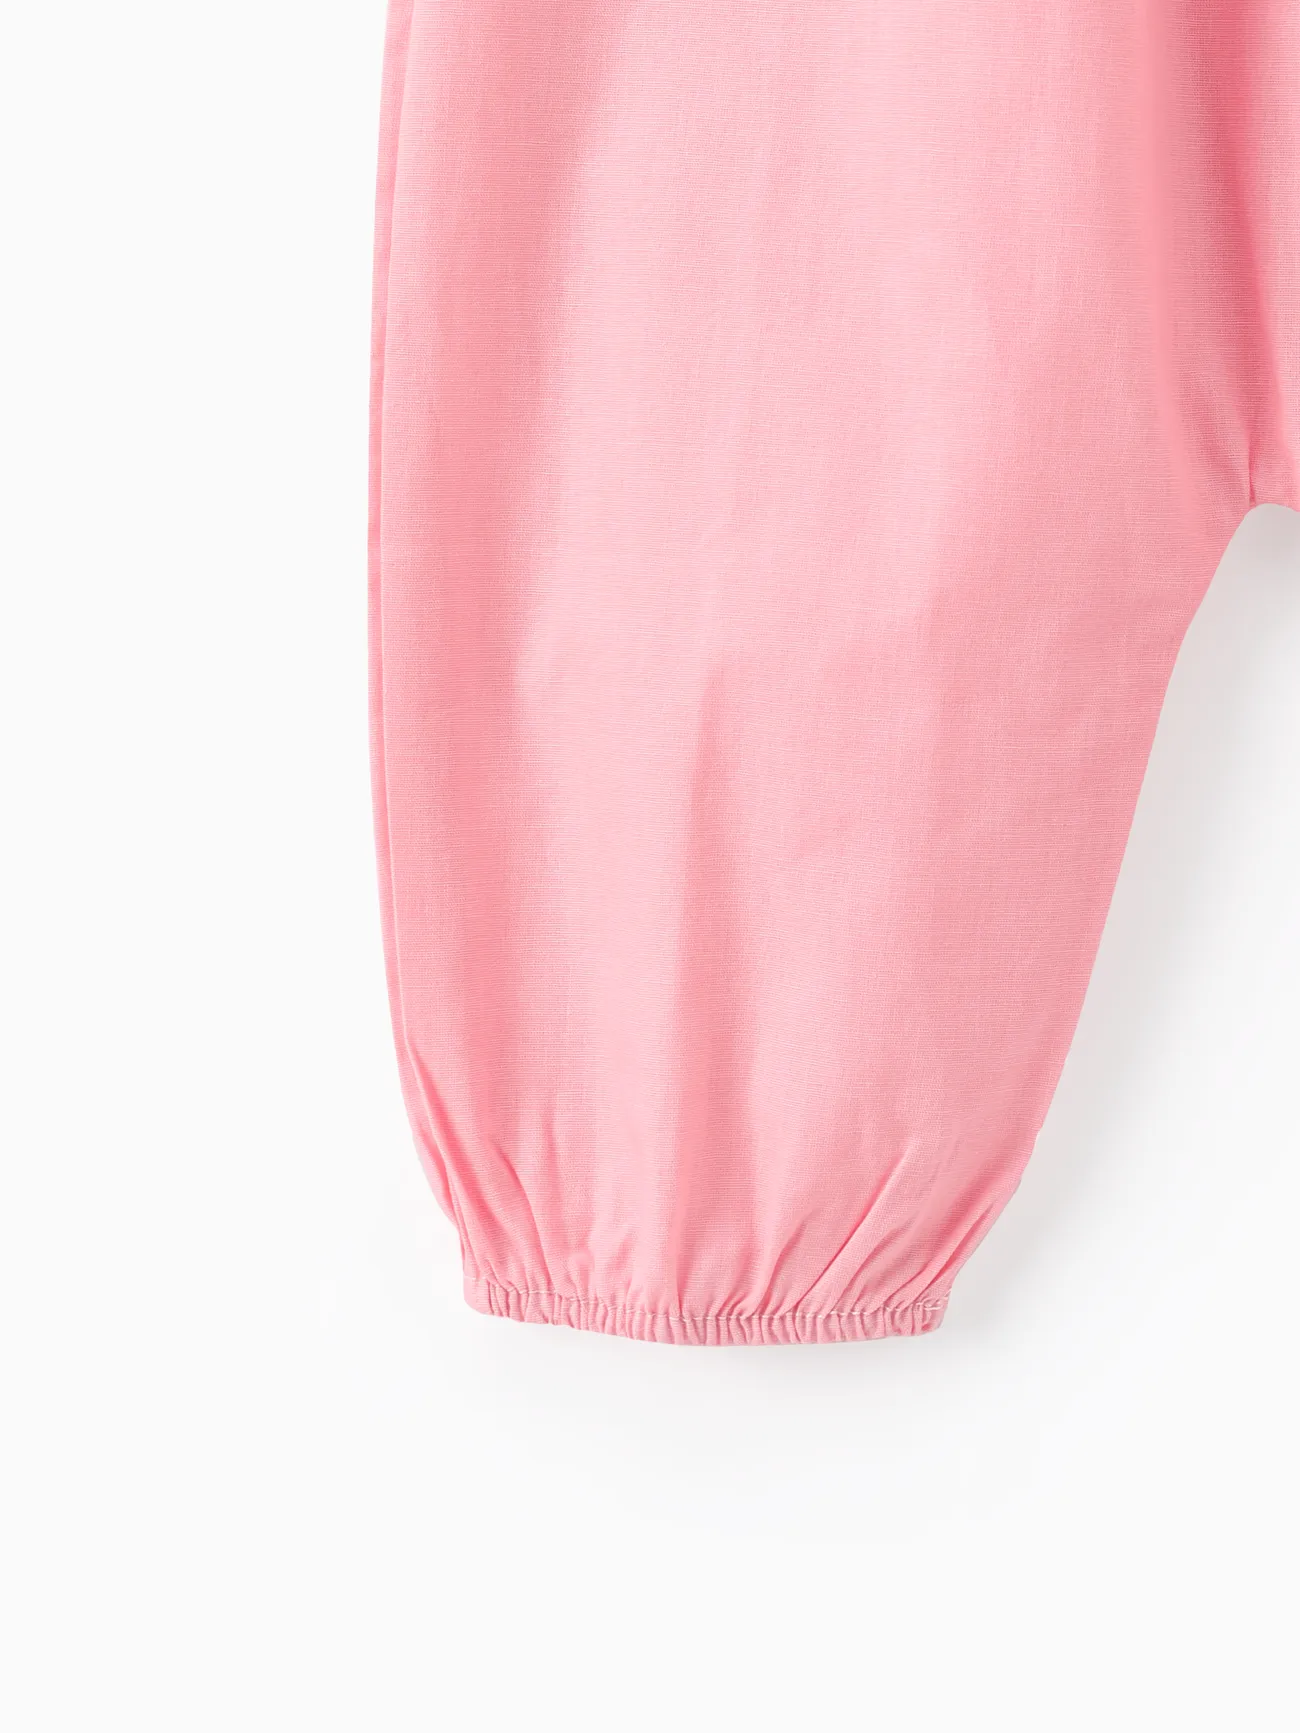 嬰兒 中性 背心 基礎 連身褲 粉色 big image 1